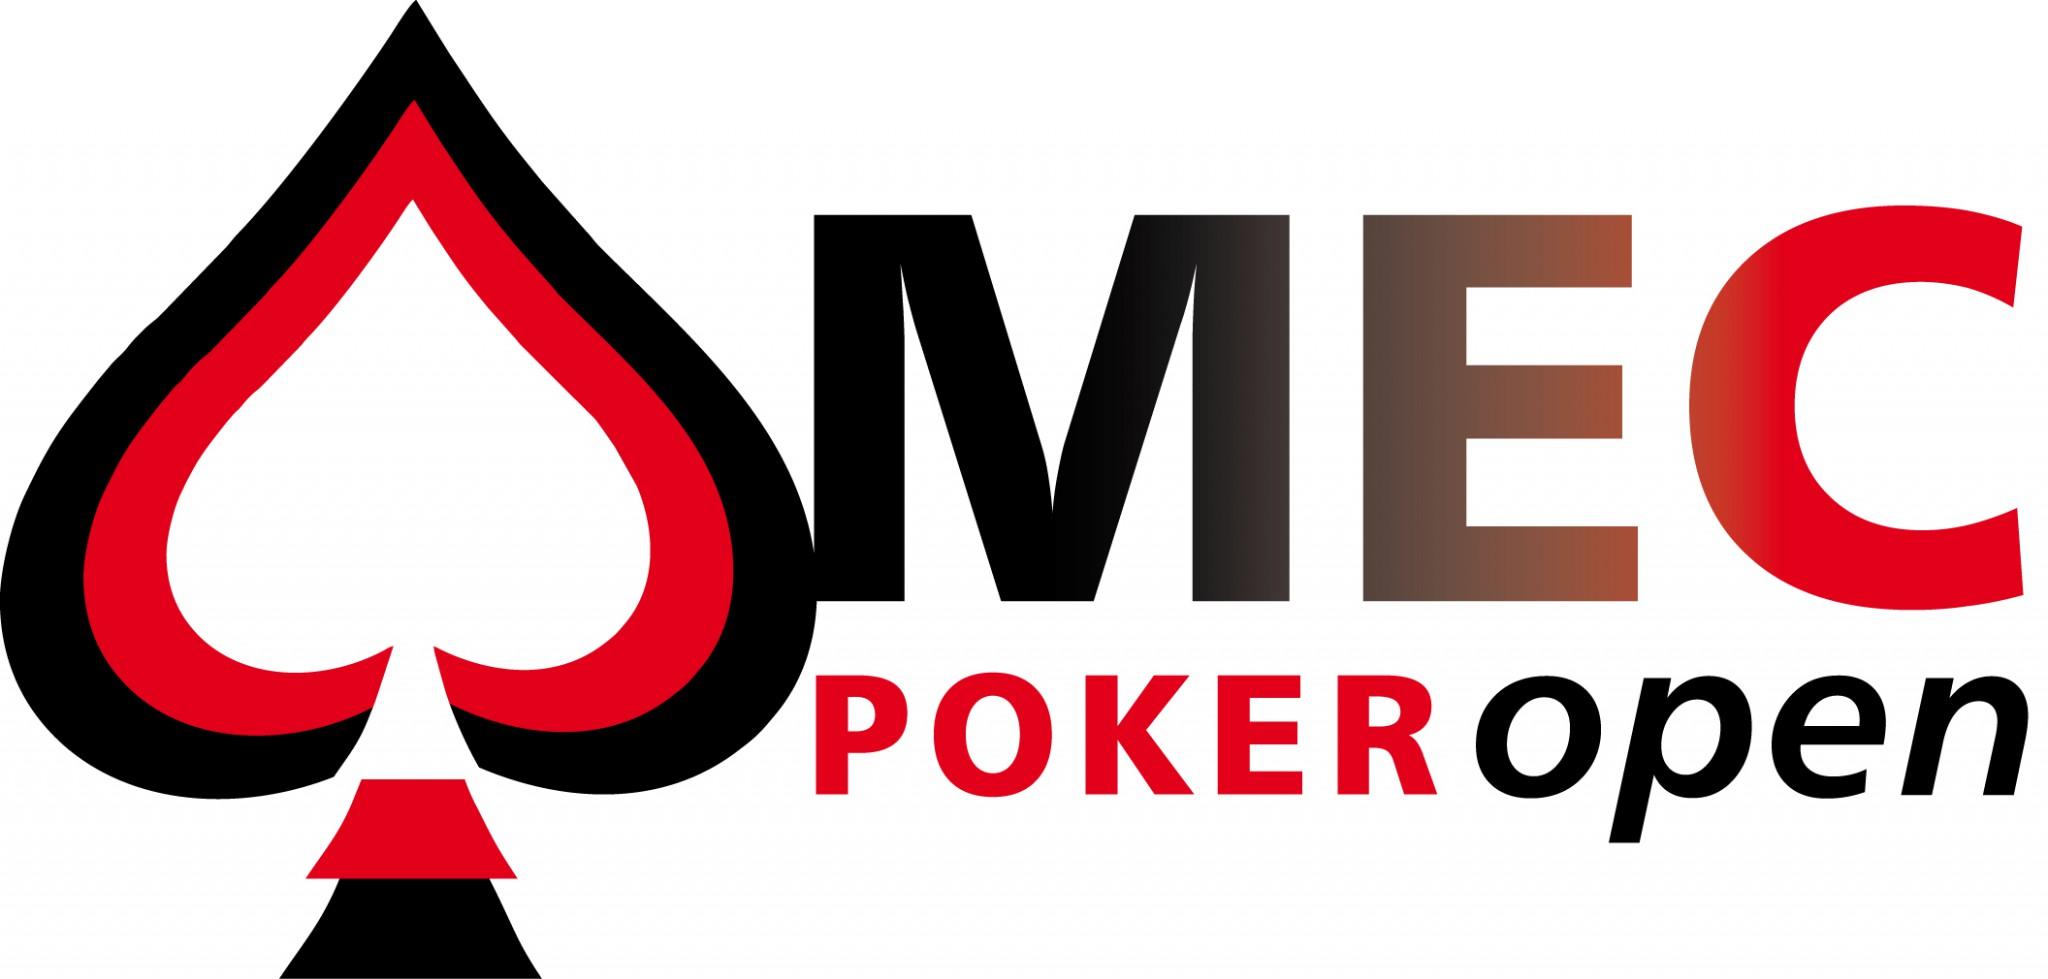 Guy van Ginderen geeft ticket MEC Poker open weg